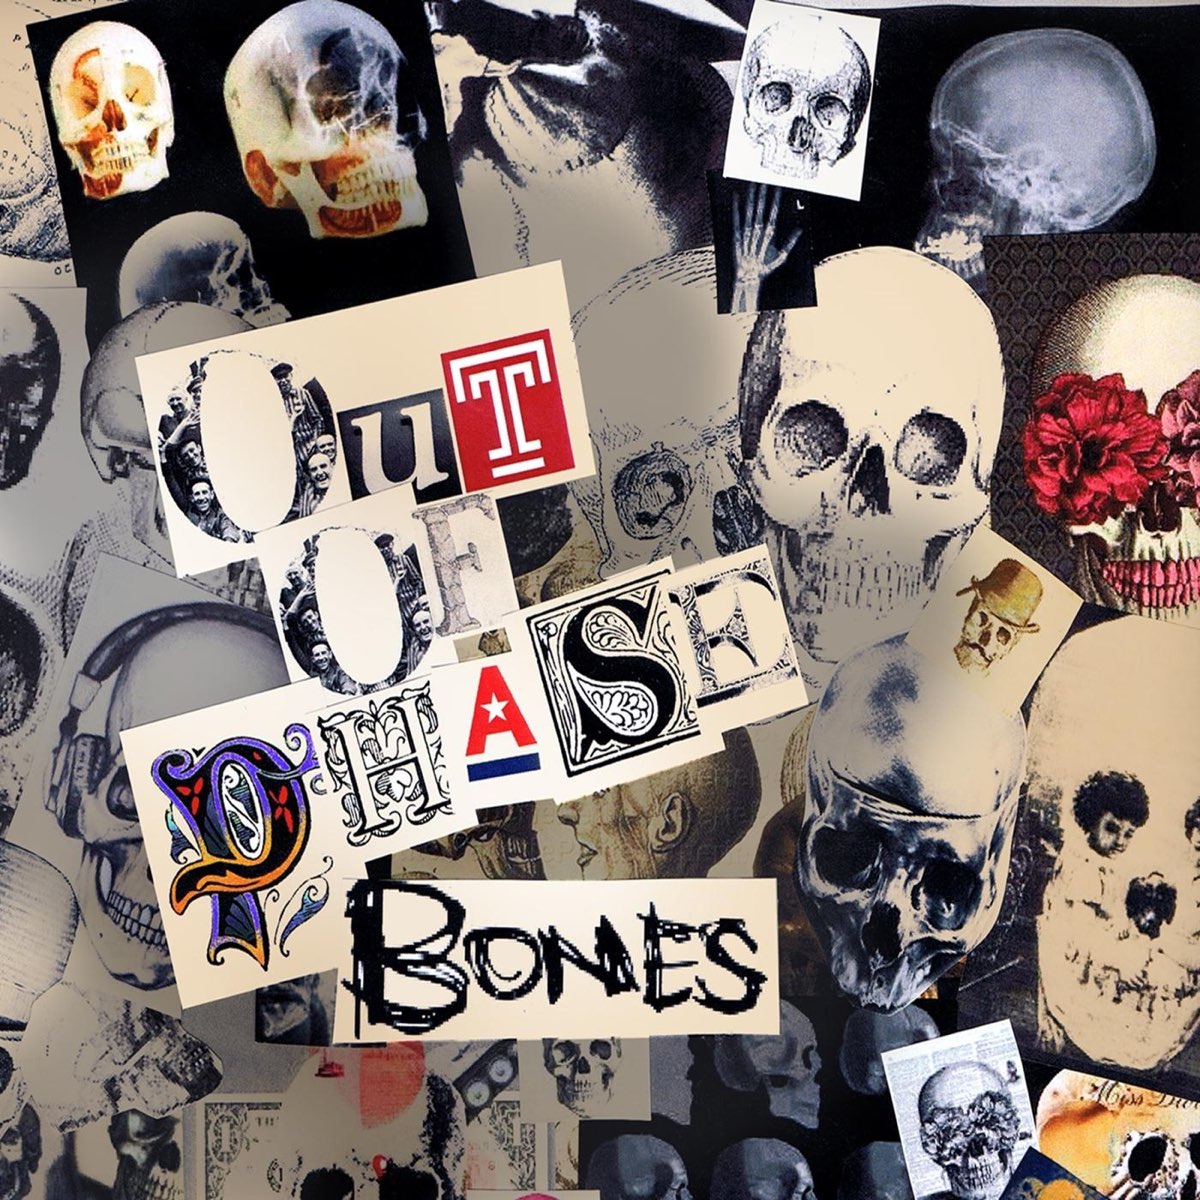 Bones ctrl. Bones альбомы. Обложка в стиле Bones. Bones обложки альбомов. Обложки песен Bones.